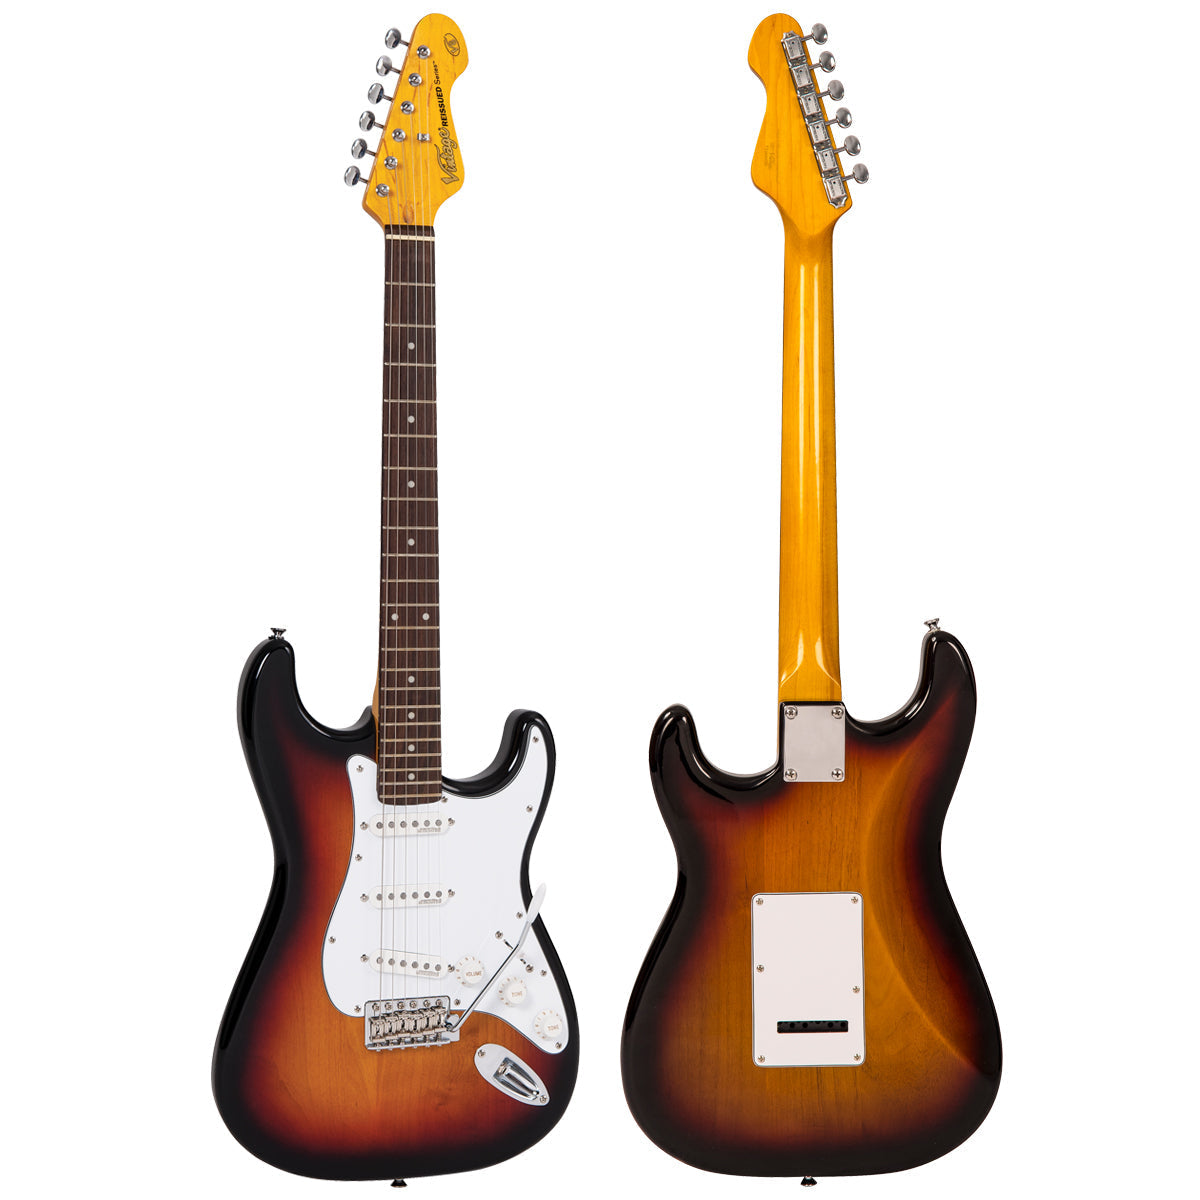 Vintage V6 ReIssued Electric Guitar ~ Sunset Sunburst, Electric Guitar for sale at Richards Guitars.